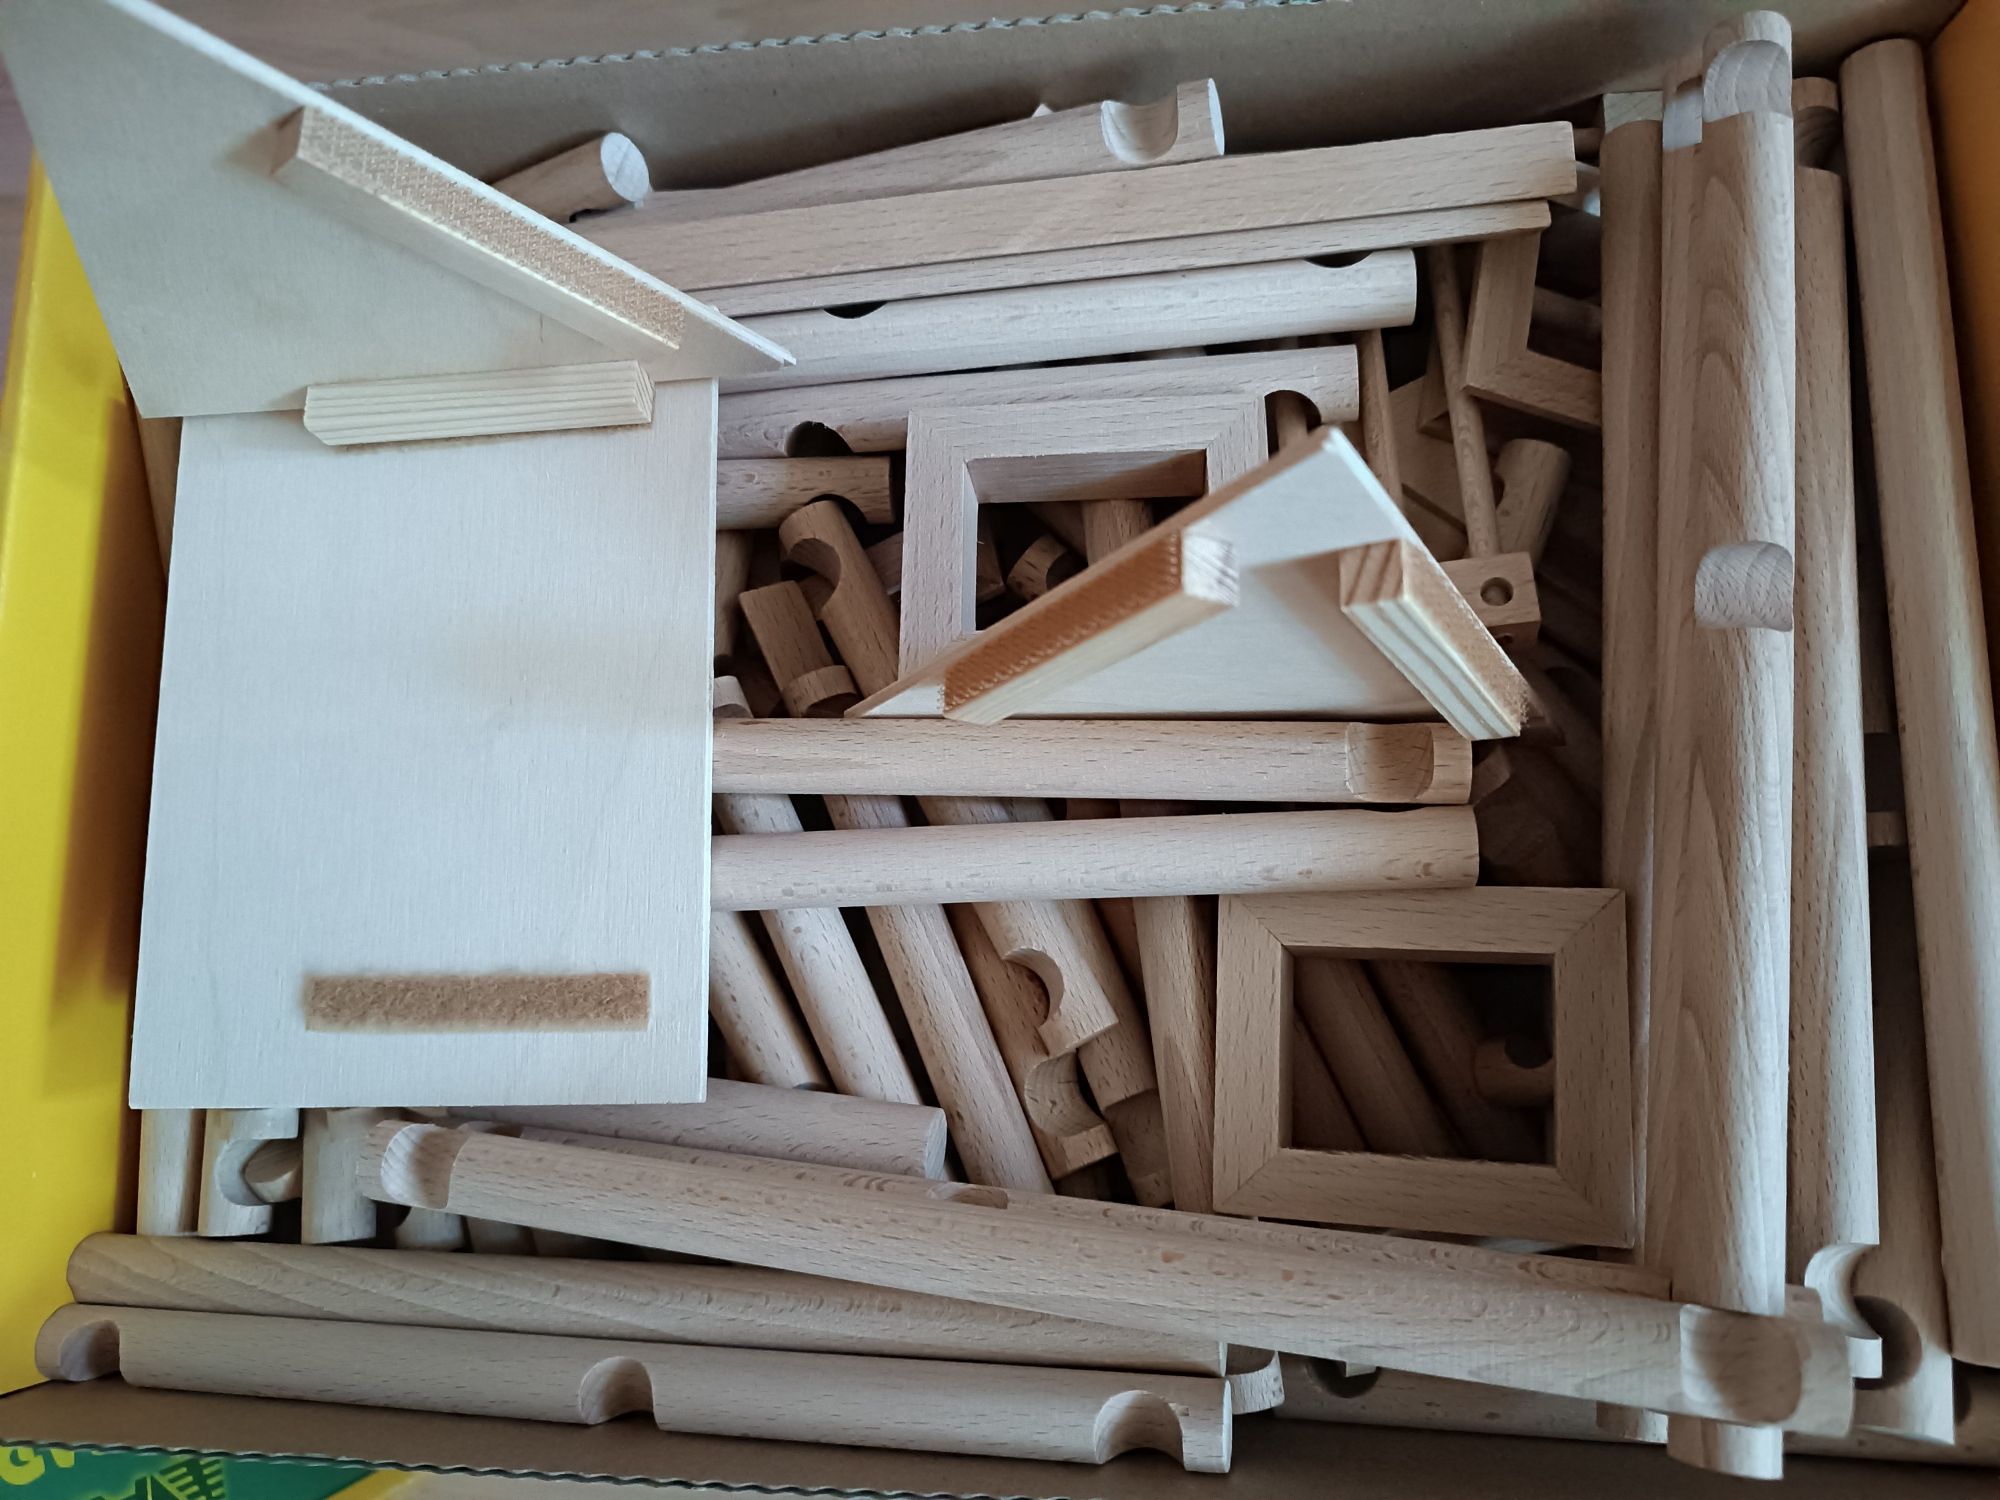 Set construcție căsuțe din lemn - pentru micii arhitecți